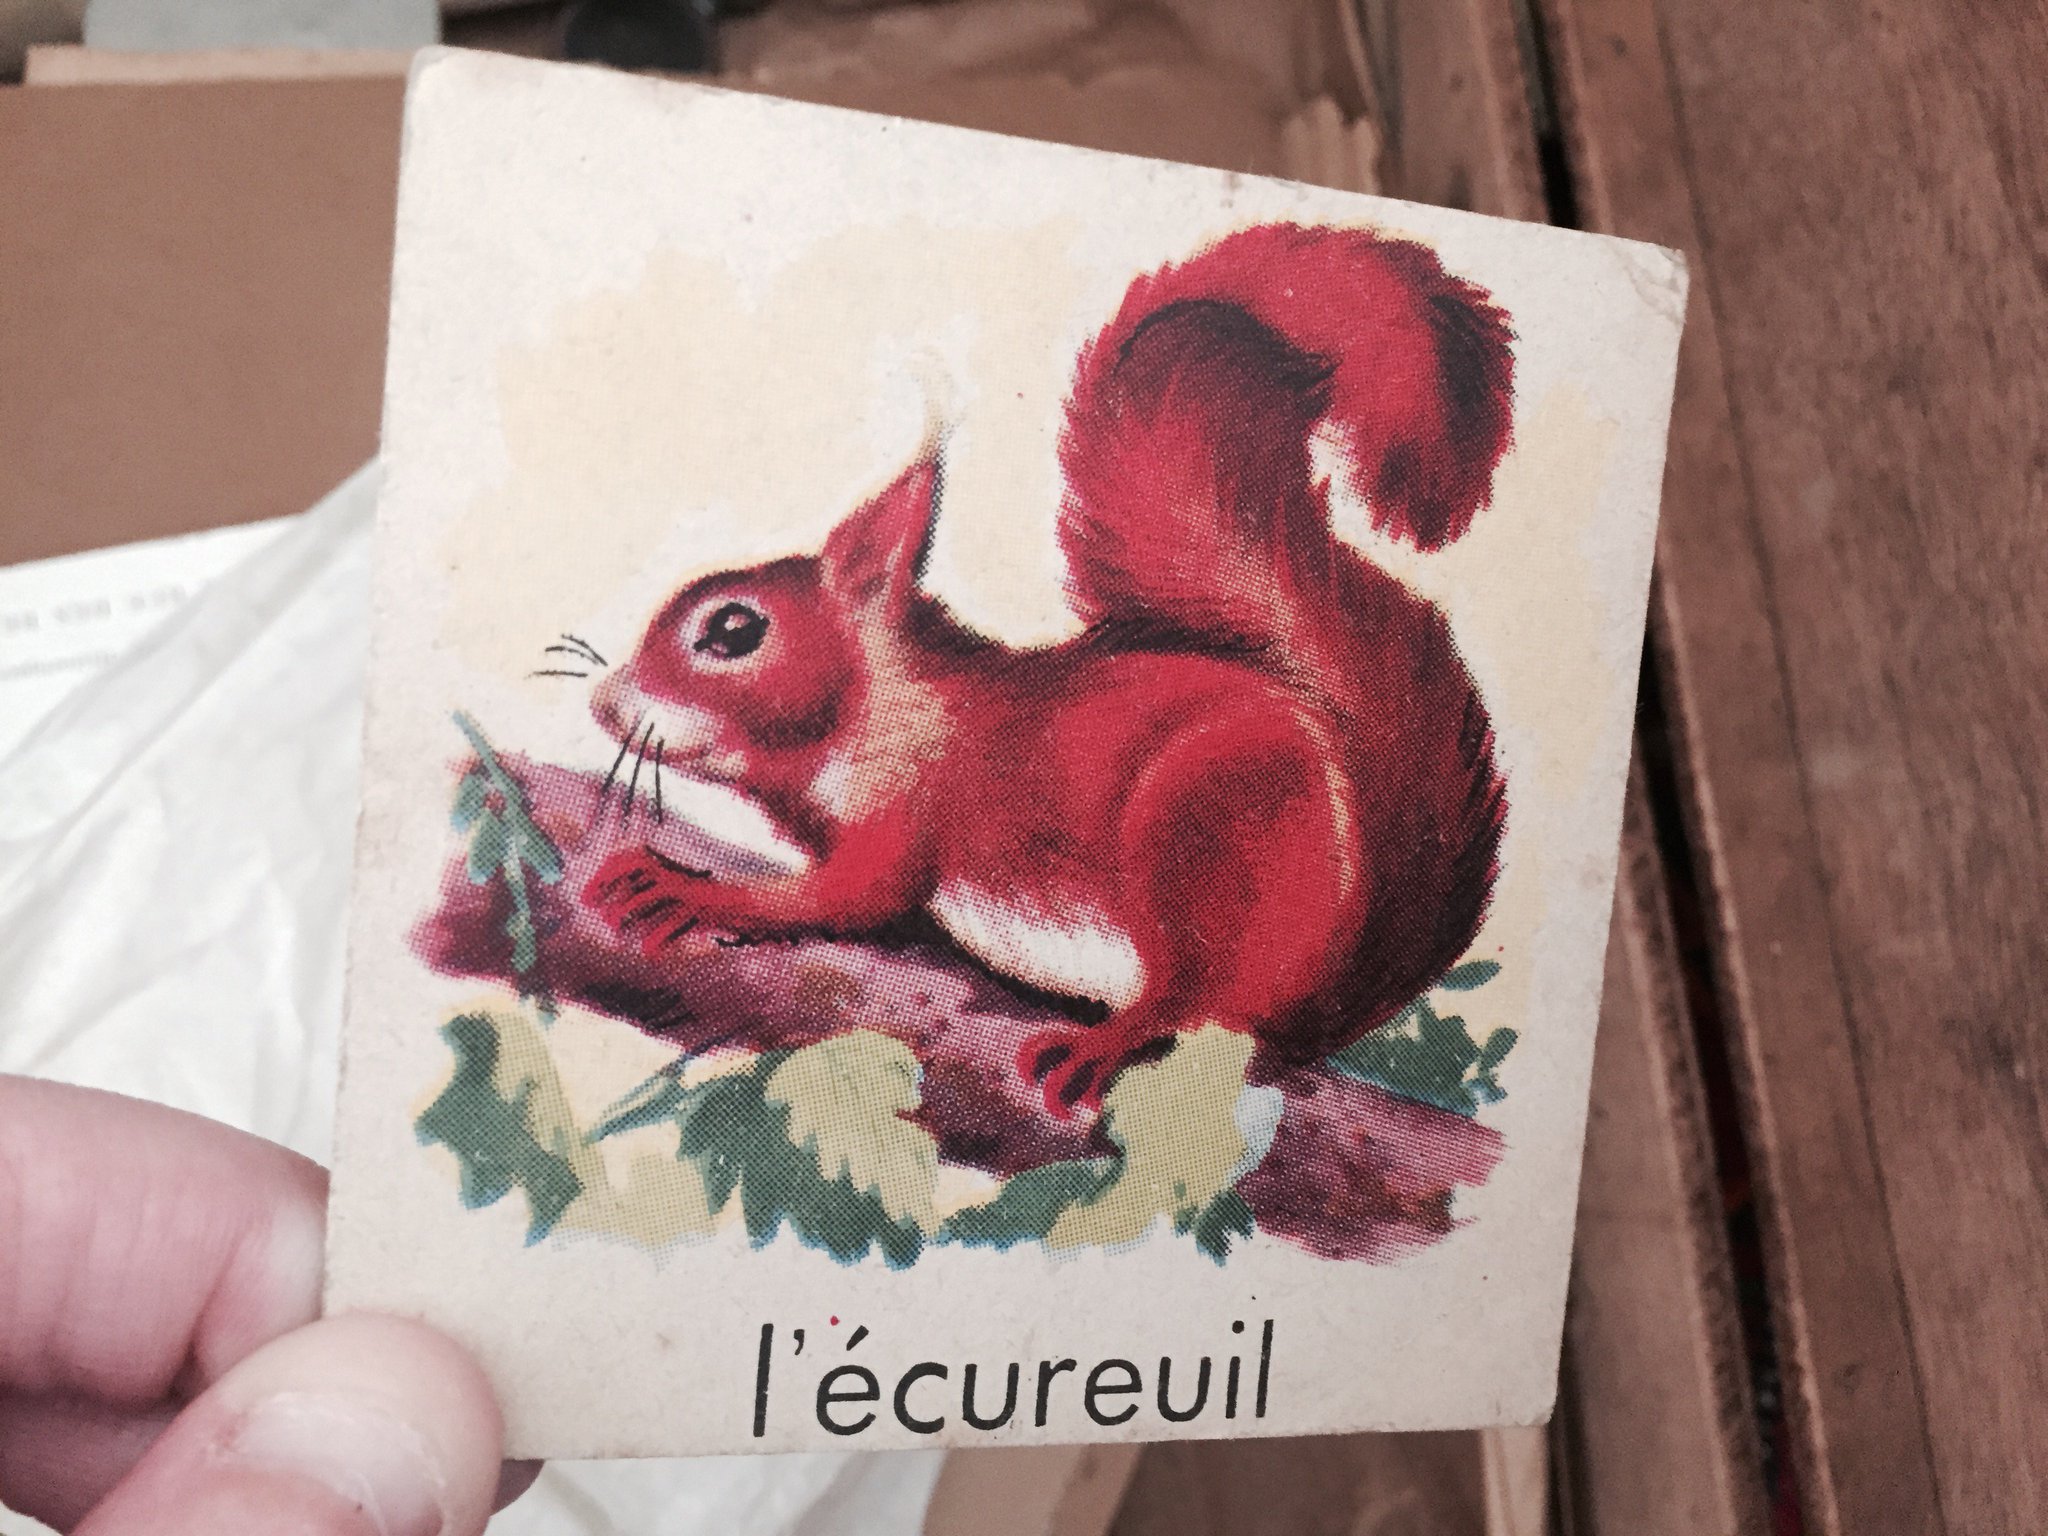 Je me demande d'ailleurs pourquoi les deux que je retrouve sont des écureuils... #Madeleineproject https://t.co/1aoJqjaJ4K